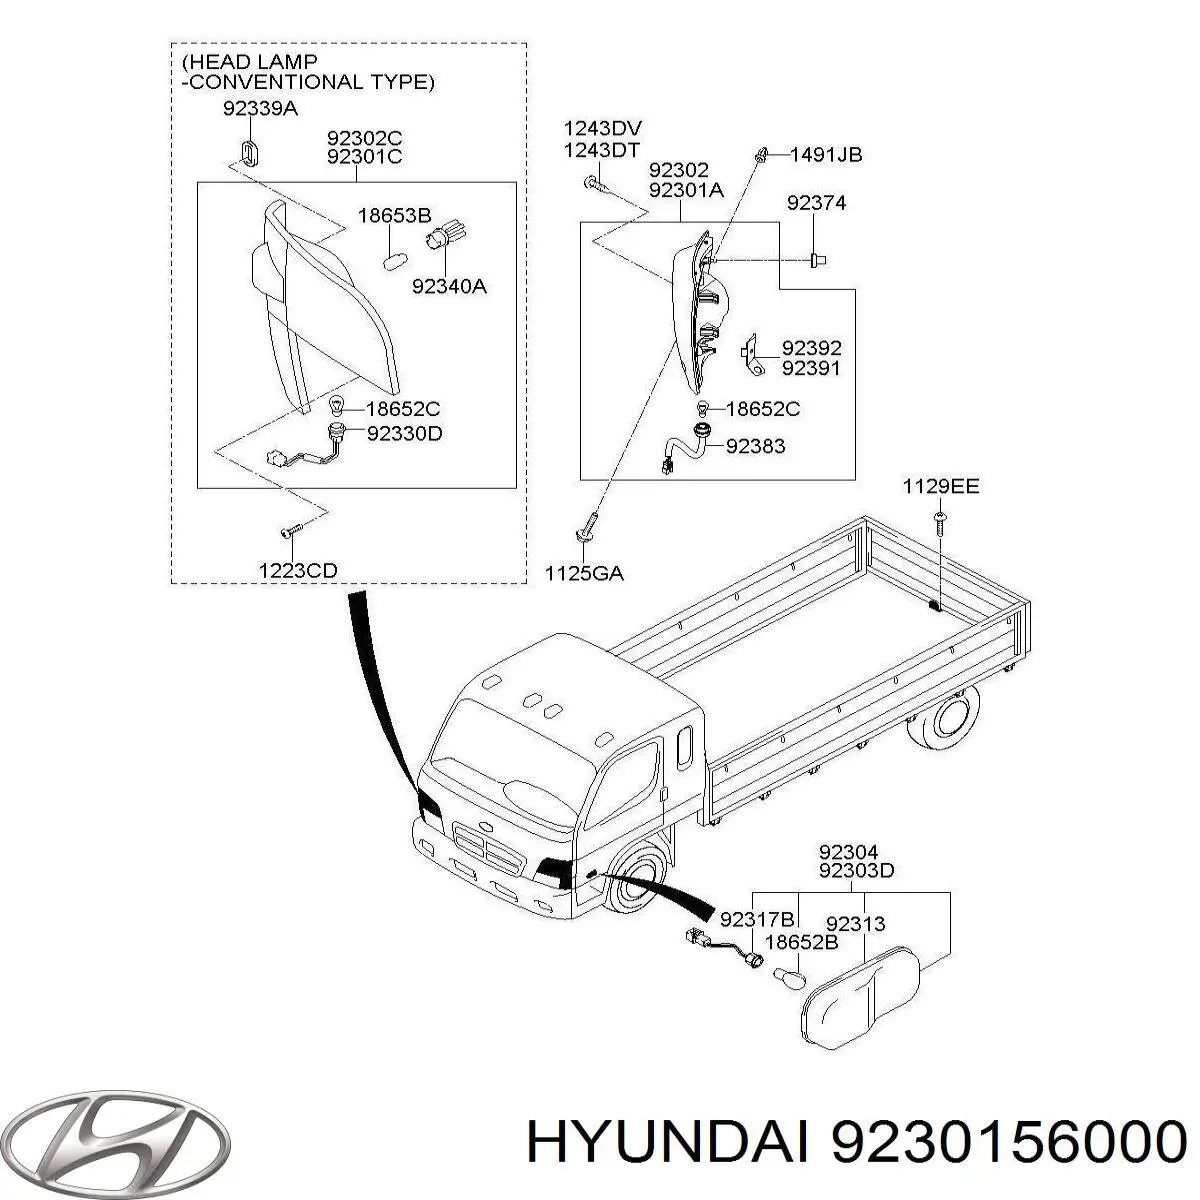 9230156001 Hyundai/Kia luz intermitente guardabarros derecho